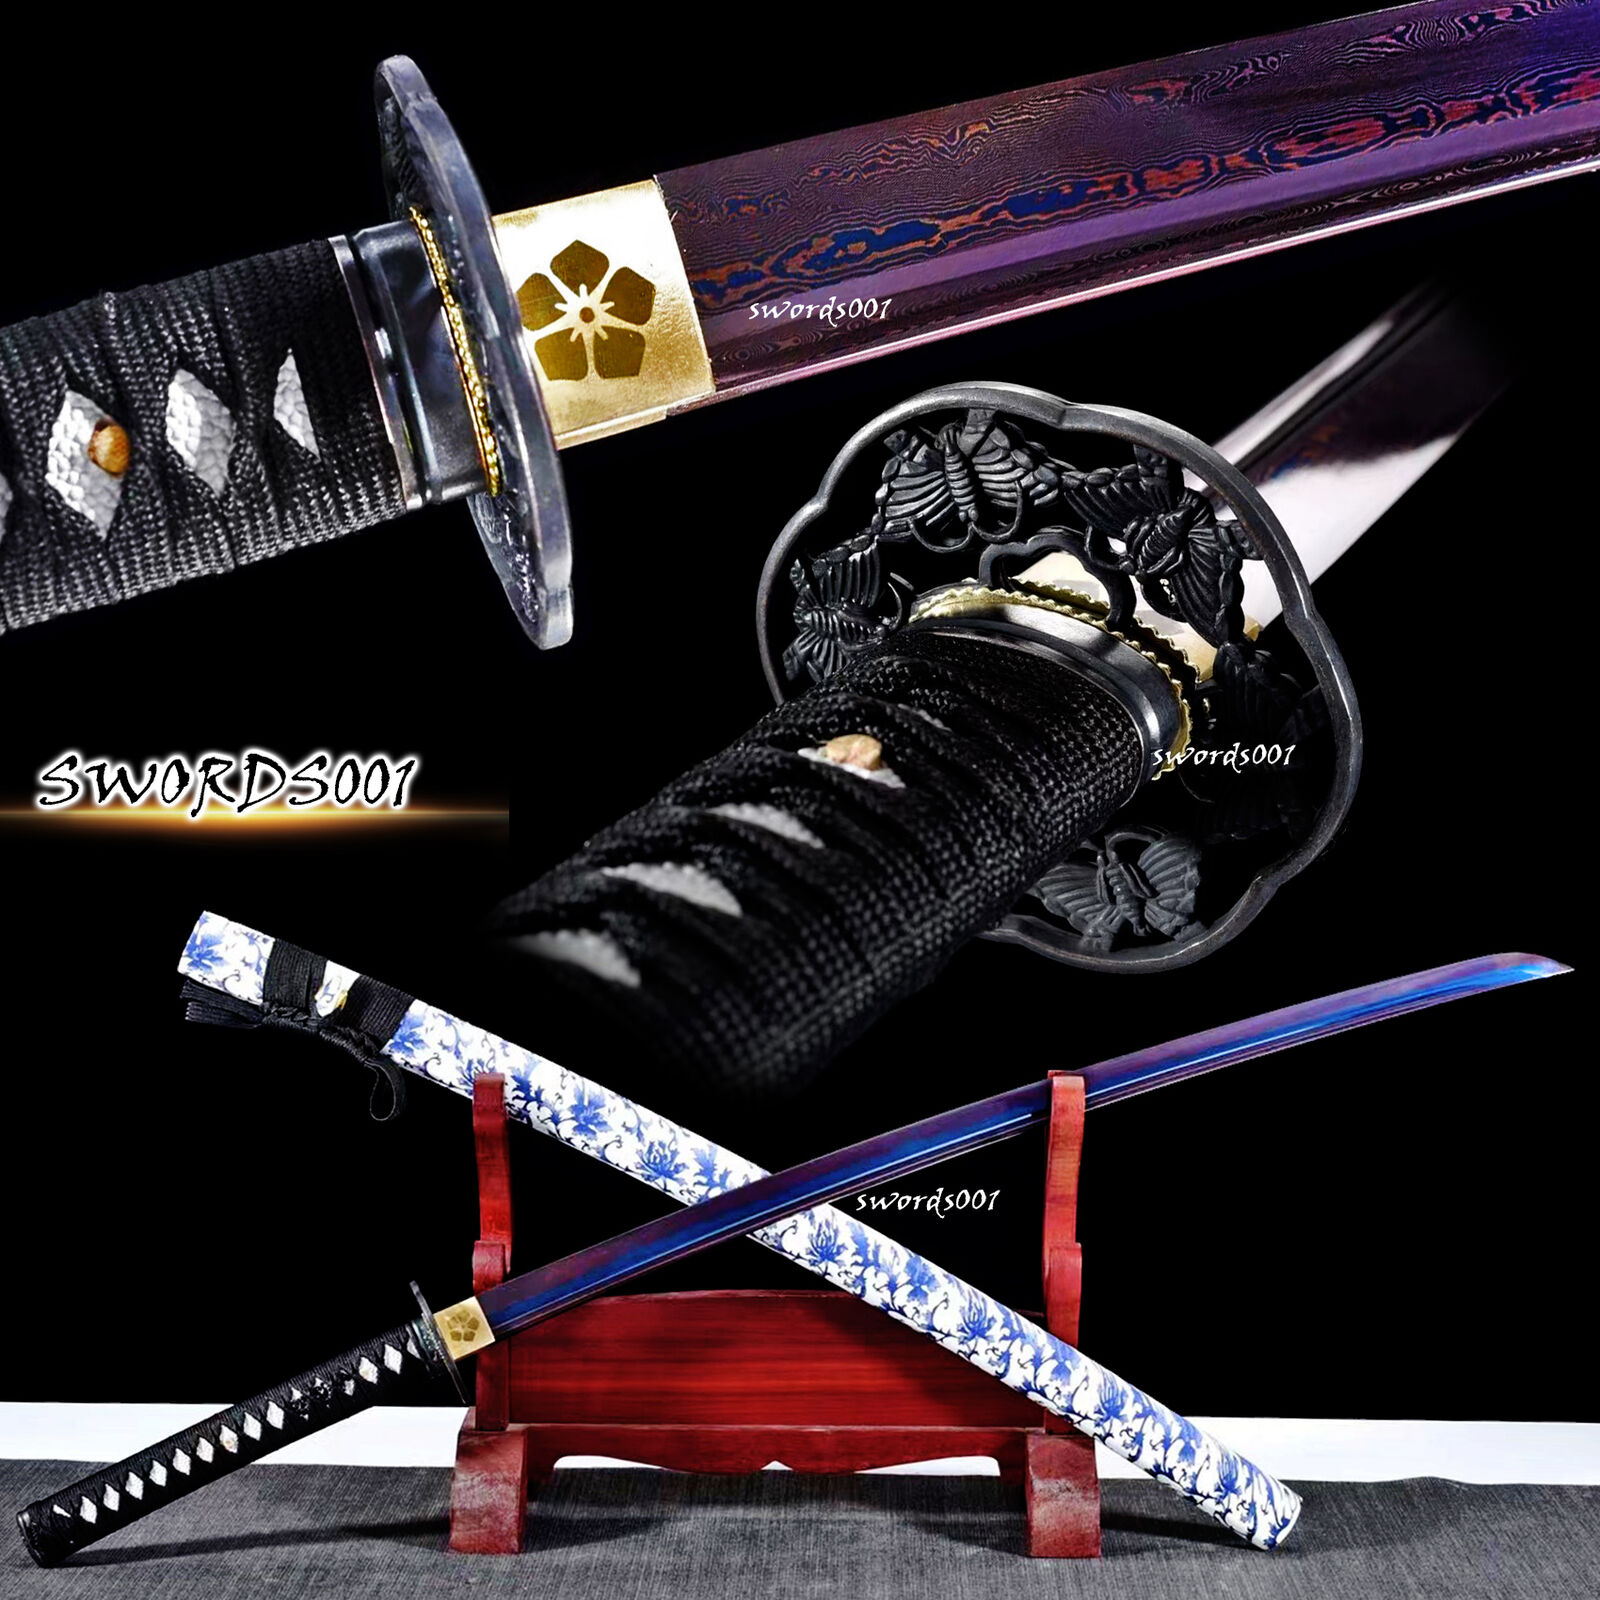 Handmade Blue & Red Folded Steel Blade Japanese Sword Samurai Katana Full Tang